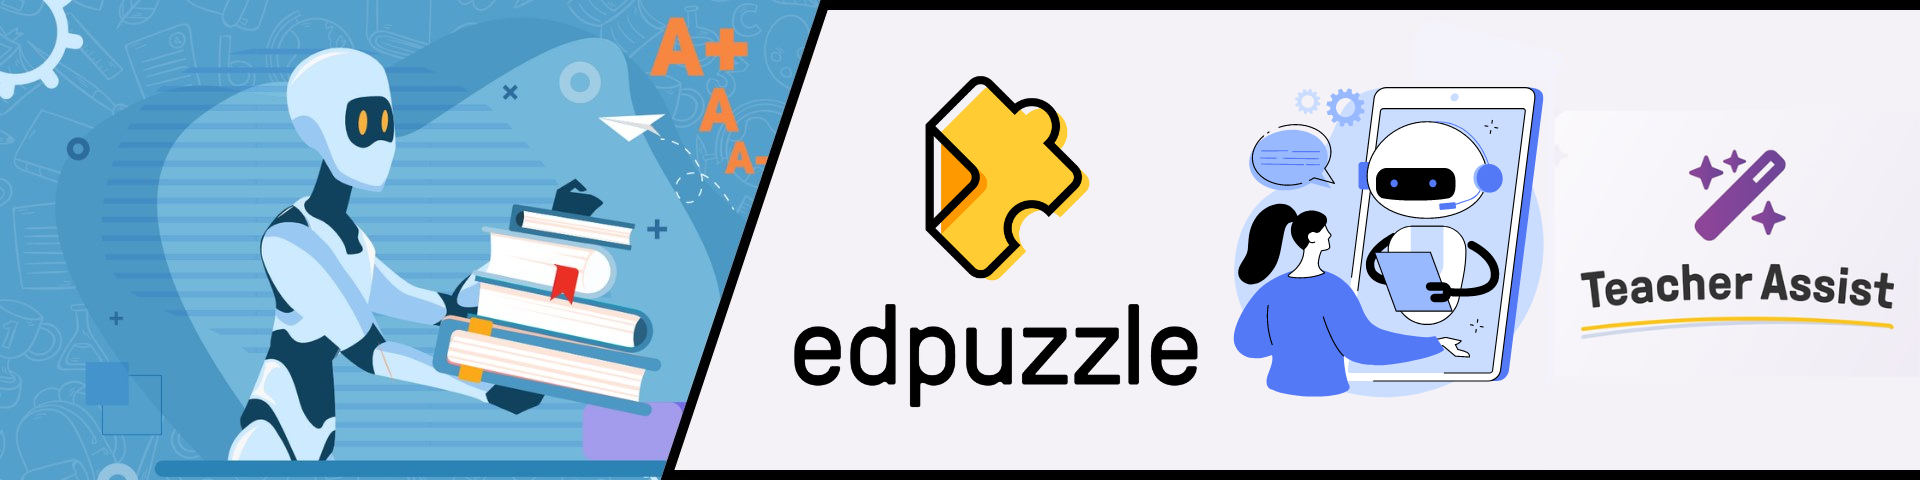 Edpuzzle Teacher Assist AI